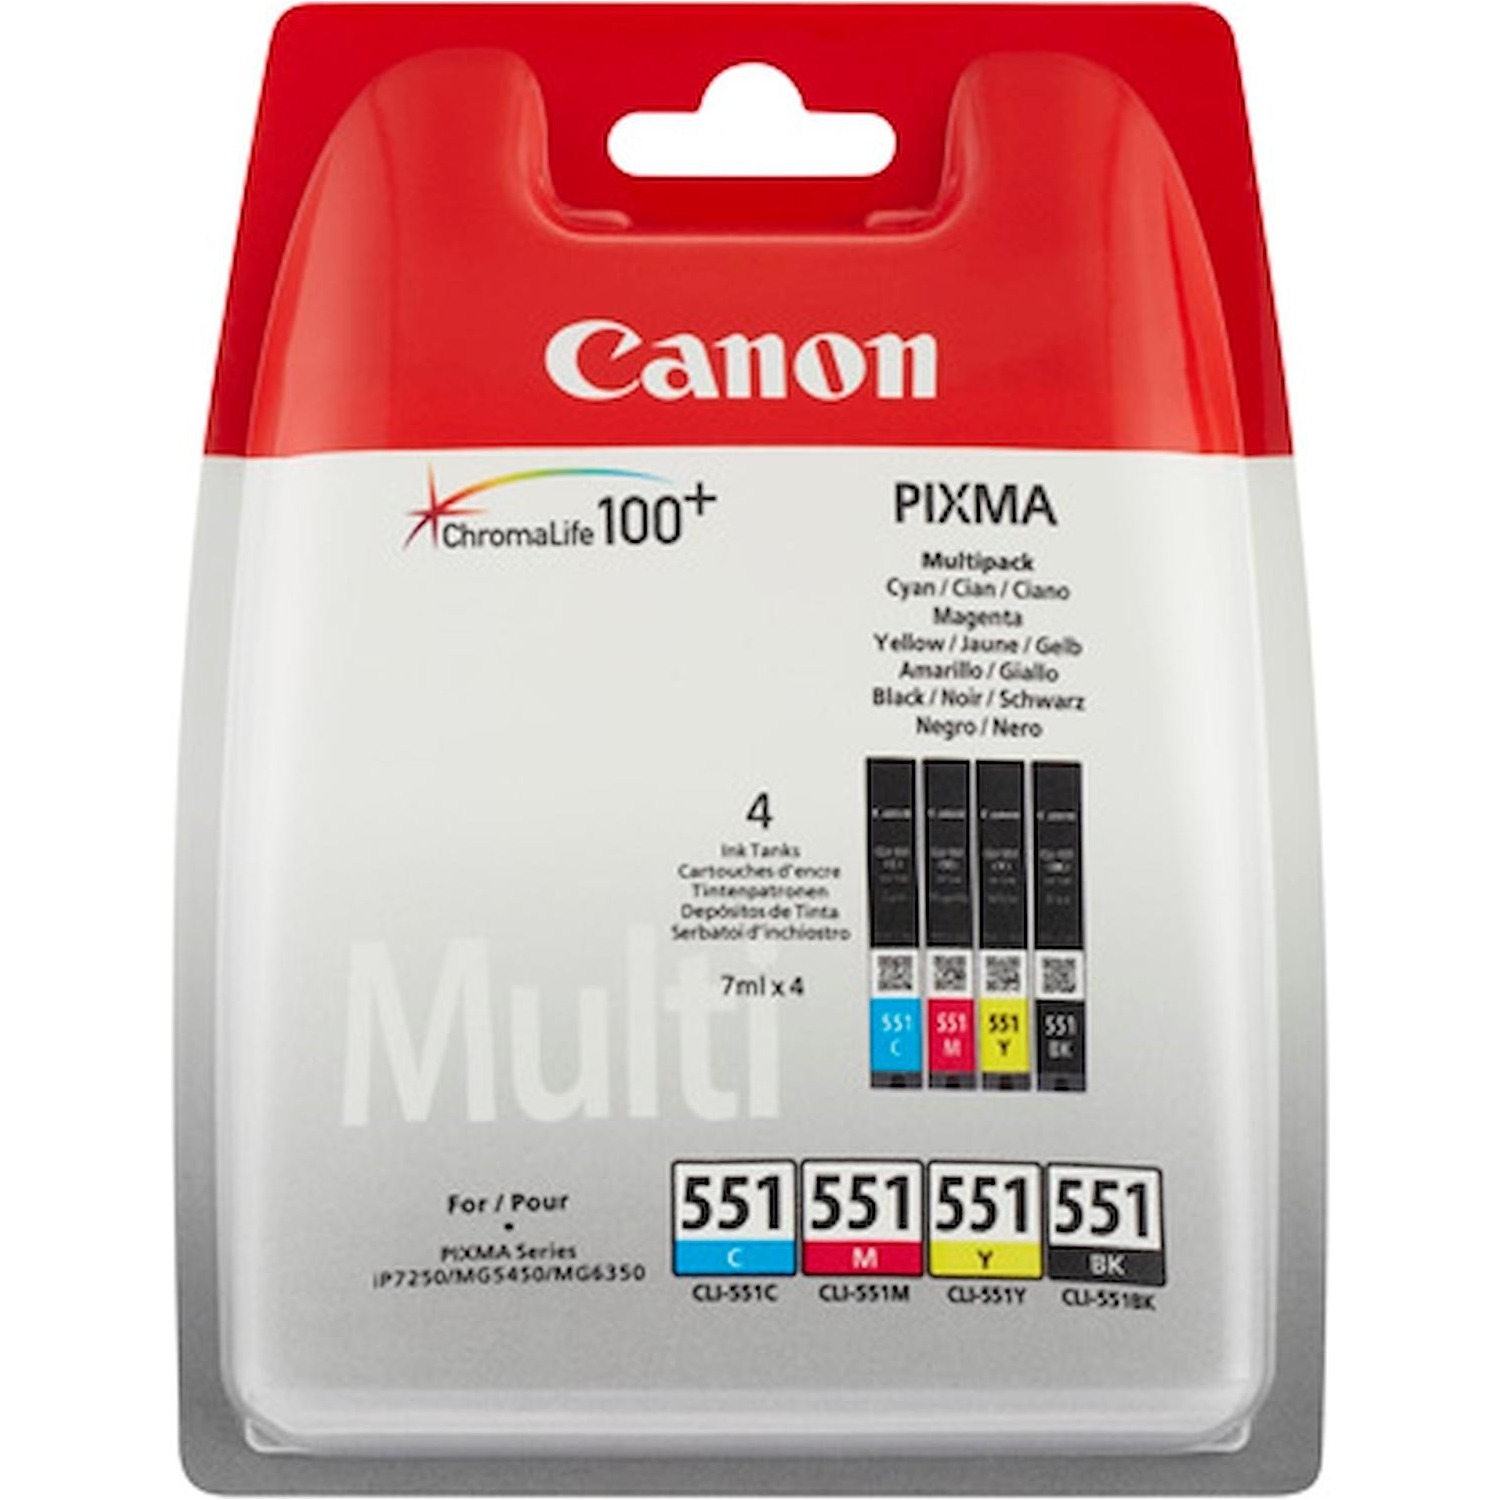 Immagine per Cartuccia multipack Canon CLI-551XL 4 colori      per PIXMA IP7250 PIXMA IX6850 PIXMA MG6350 da DIMOStore